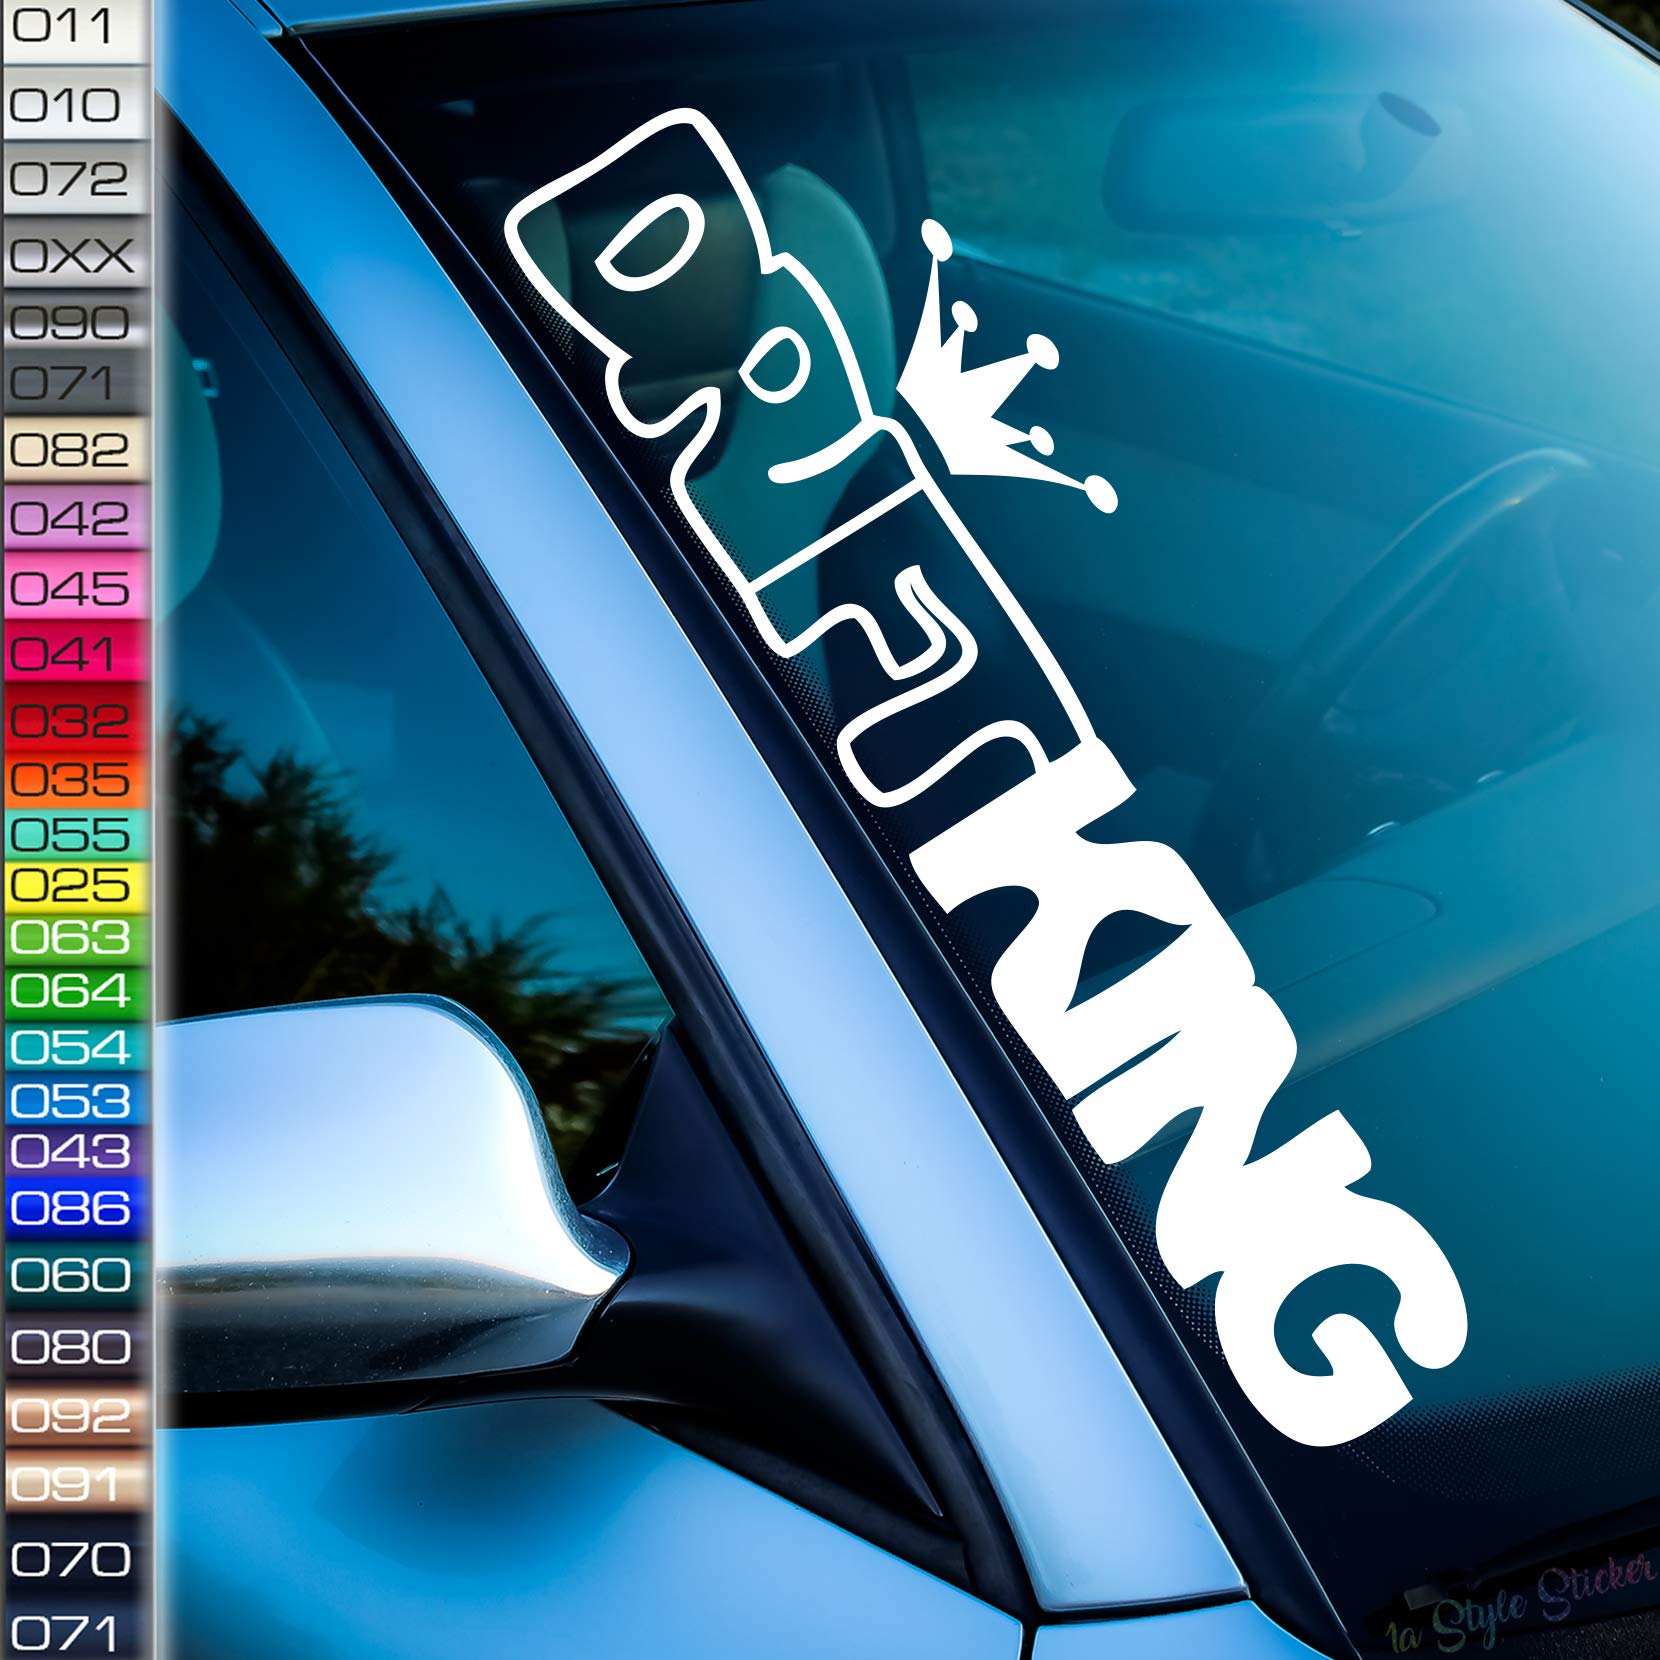 Dirft King Frontscheiben-Aufkleber Winter Auto-Sticker ASC Schnee Ski Powder Snowboard Quer Rauch Reifen felgen Zoll Rims von 1A Style Sticker